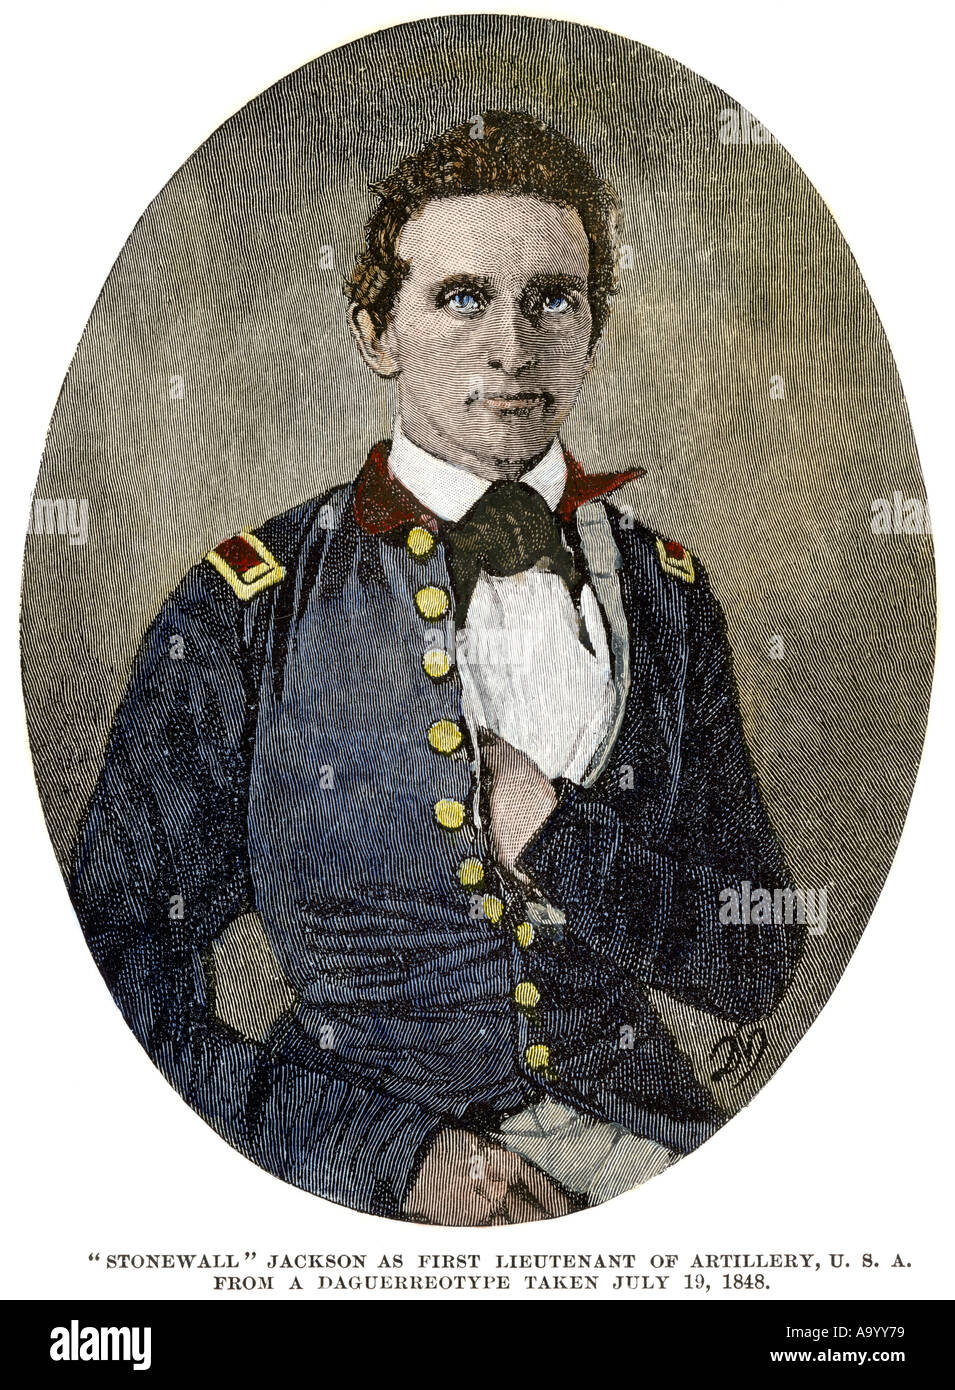 Junge Thomas Jackson wenn Er war Leutnant der Artillerie der US-Armee 1848 später bekannt als Stonewall Jackson. Hand - farbige Holzschnitt Stockfoto